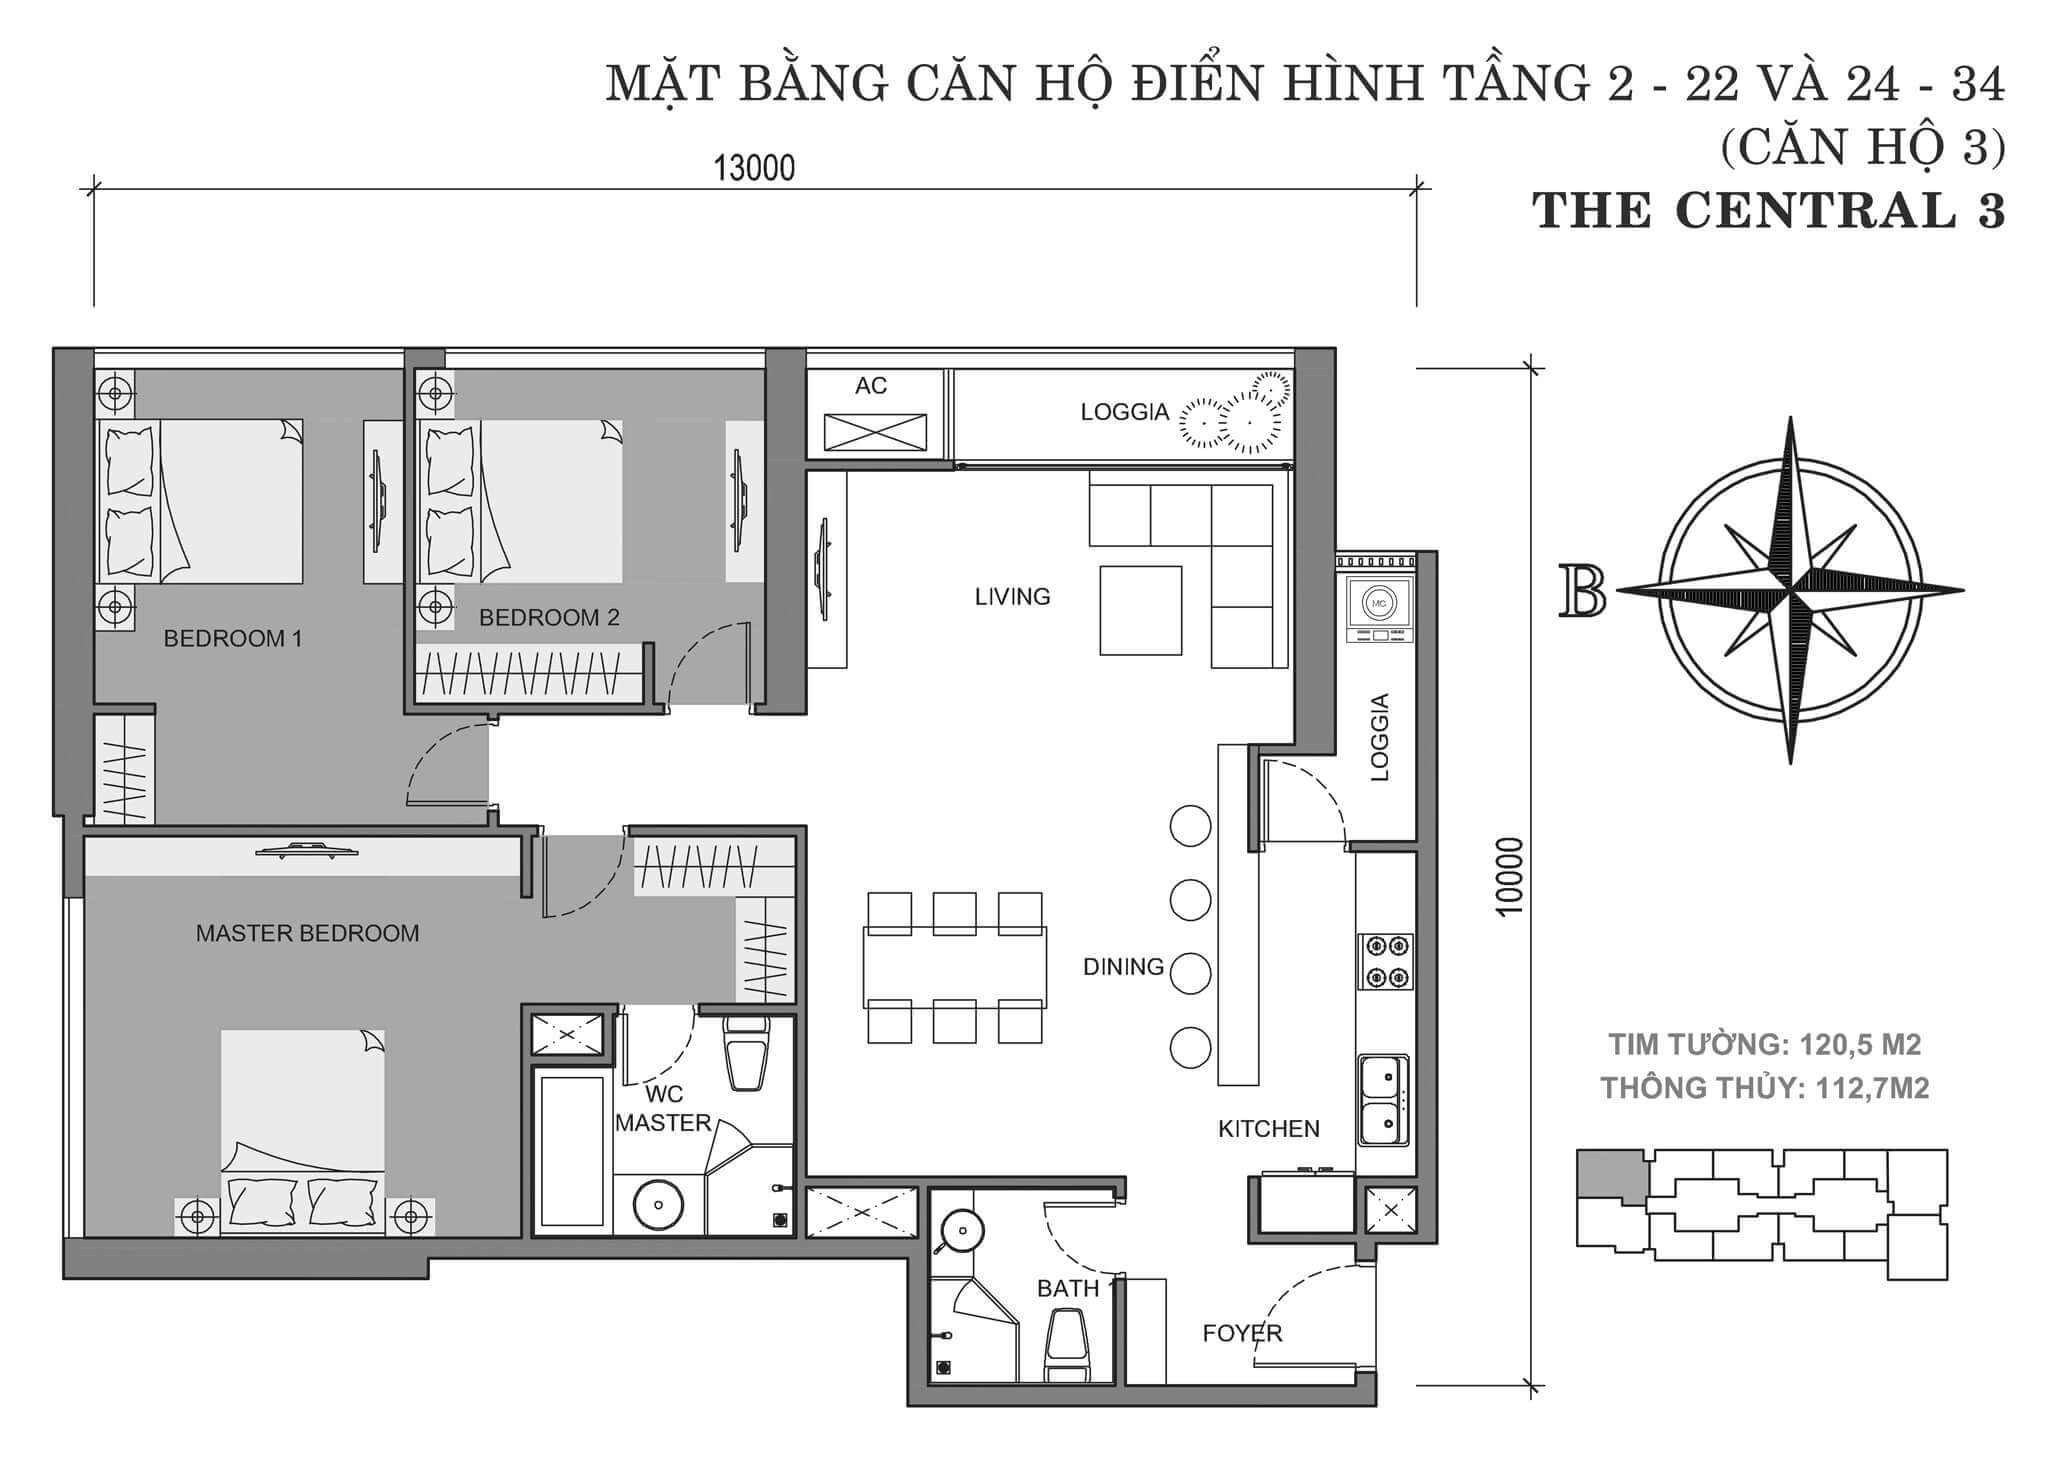 layout căn hộ số 3 tòa Central 3 tầng 2-34  